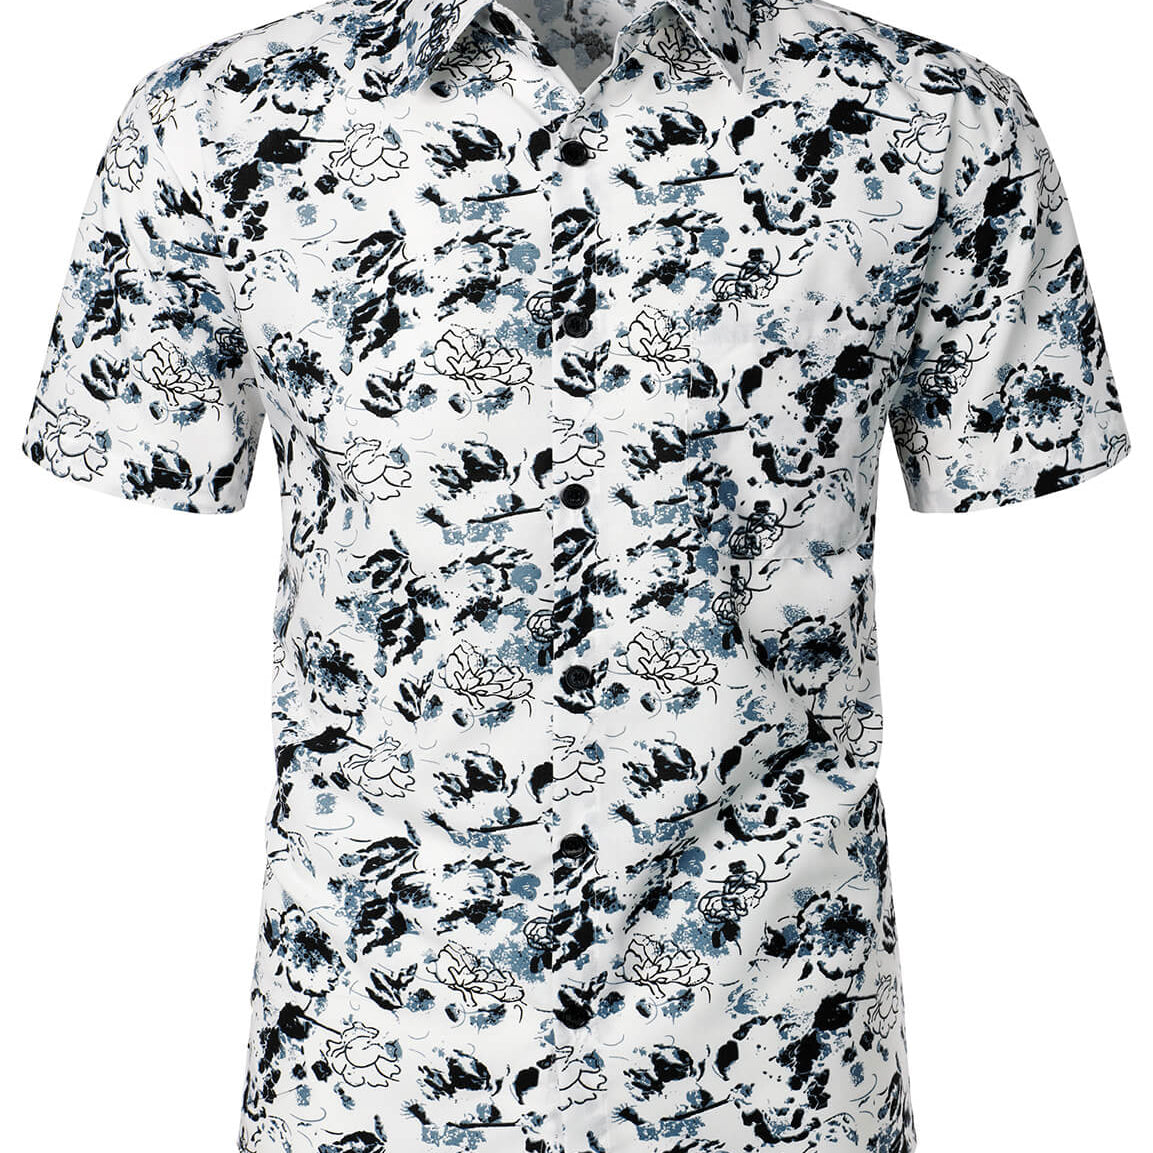 Camisa de manga corta de algodón con botones y flores de verano, floral, blanca y negra, para hombre